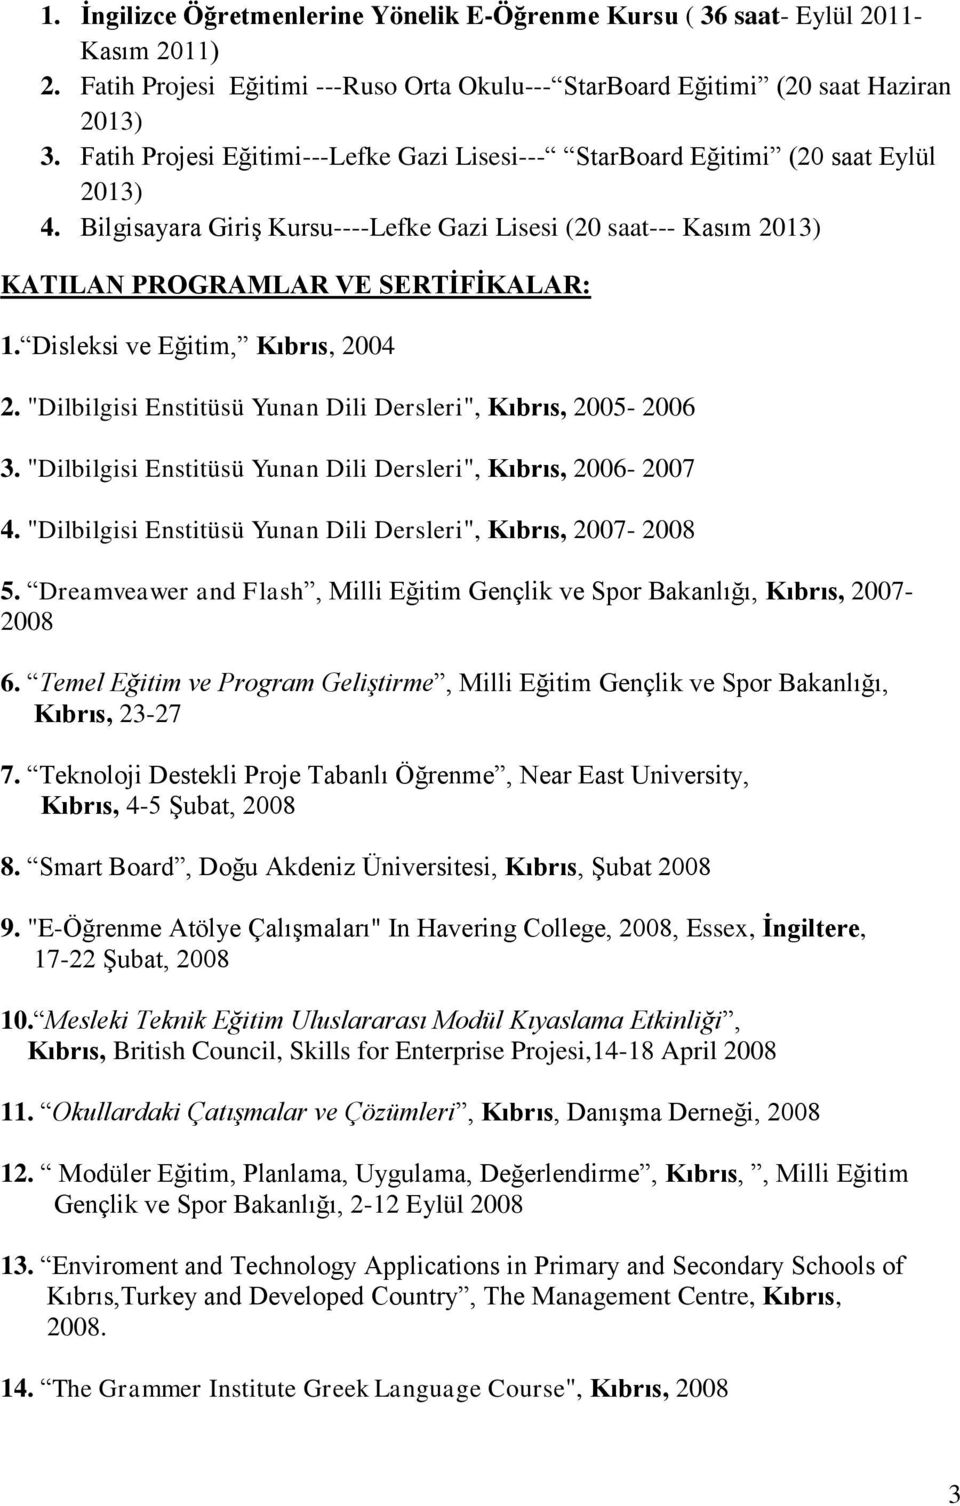 Disleksi ve Eğitim, Kıbrıs, 2004 2. "Dilbilgisi Enstitüsü Yunan Dili Dersleri", Kıbrıs, 2005-2006 3. "Dilbilgisi Enstitüsü Yunan Dili Dersleri", Kıbrıs, 2006-2007 4.